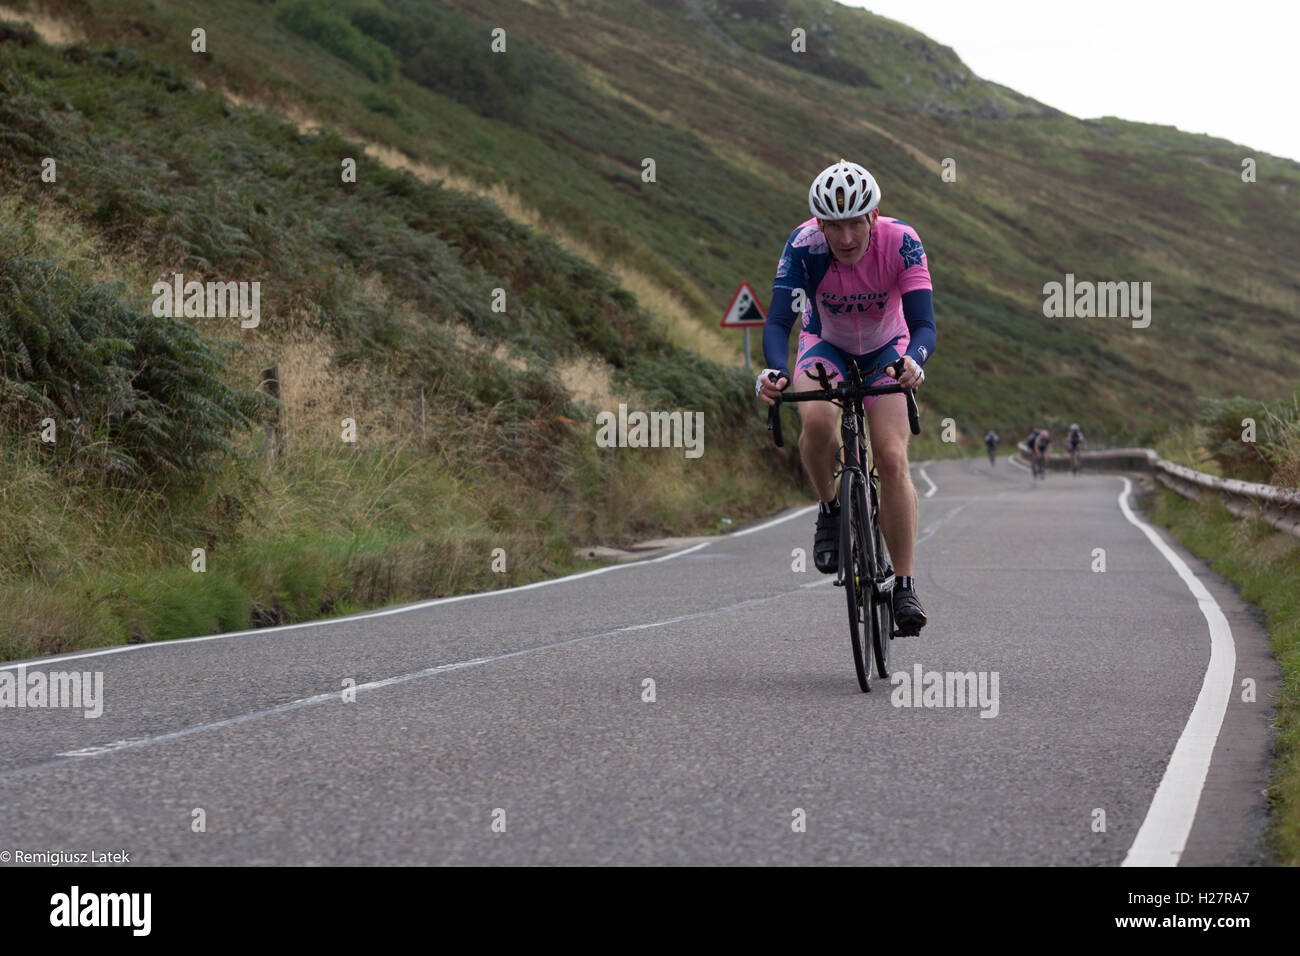 Beschleunigen professionell gekleidet Radfahrer auf dem Asphalt während des Wettbewerbs in Schottland Stockfoto